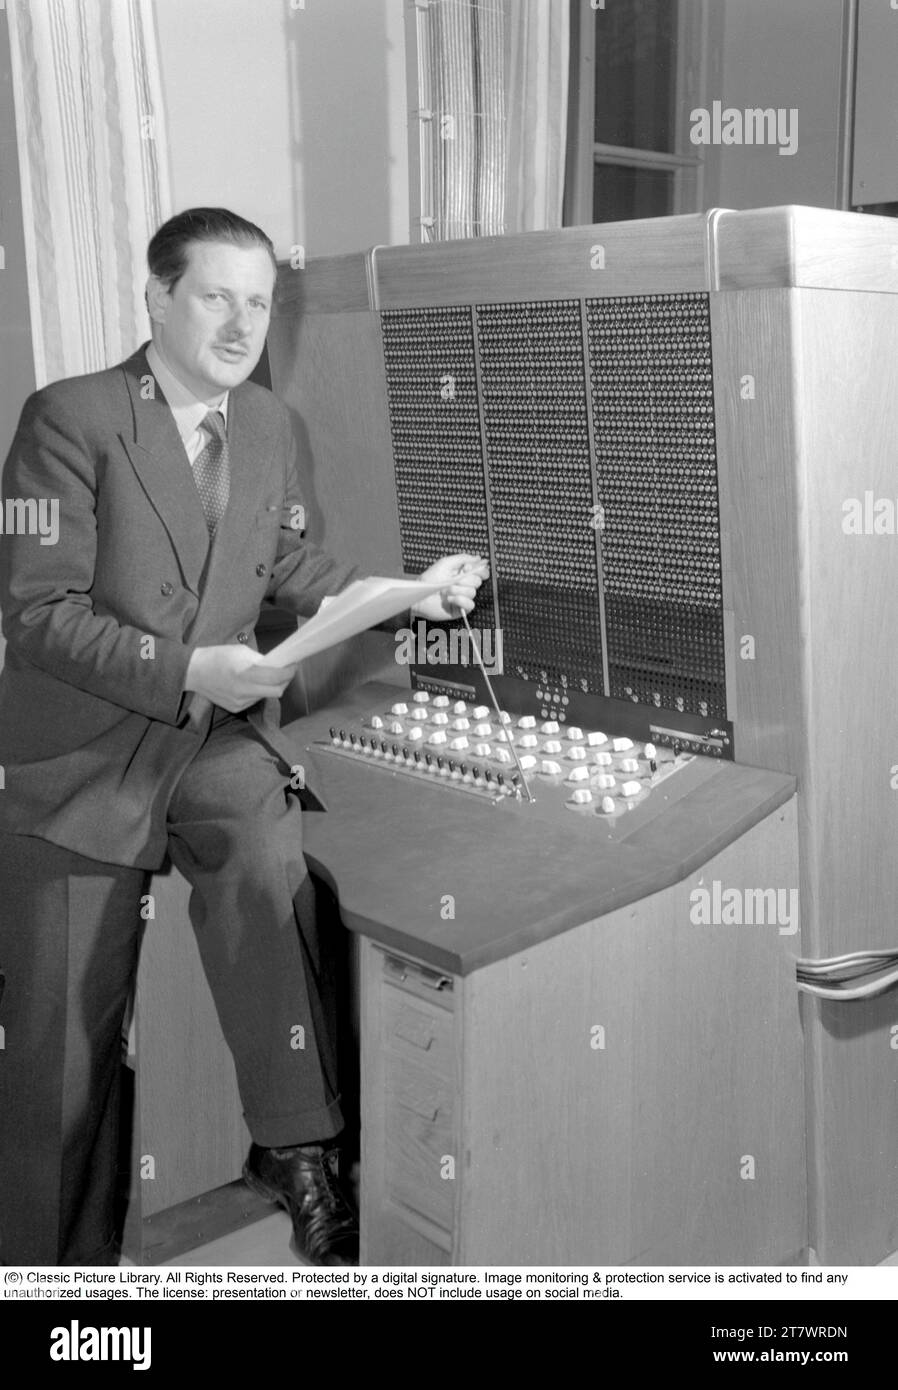 Computer BARK. Calcolatore relè aritmetico binario (automatico)". Un computer elettromeccanico dei primi anni '1950. BARK è stato inaugurato il 28 aprile 1950, è stato in funzione fino al luglio 1955 ha potuto eseguire l'aggiunta in 150 ms e la moltiplicazione in 250 ms. Aveva una memoria con 50 registri e 100 costanti. In seguito è stato ampliato per raddoppiare la memoria. Howard Aiken (fisico americano, pioniere del computing, progettista concettuale IBM) ha dichiarato, in riferimento a BARK, "questo è il primo computer che ho visto fuori Harvard che funziona davvero". La costruzione del computer di CORTECCIA fu guidata da Conny Palm, un elettore Foto Stock